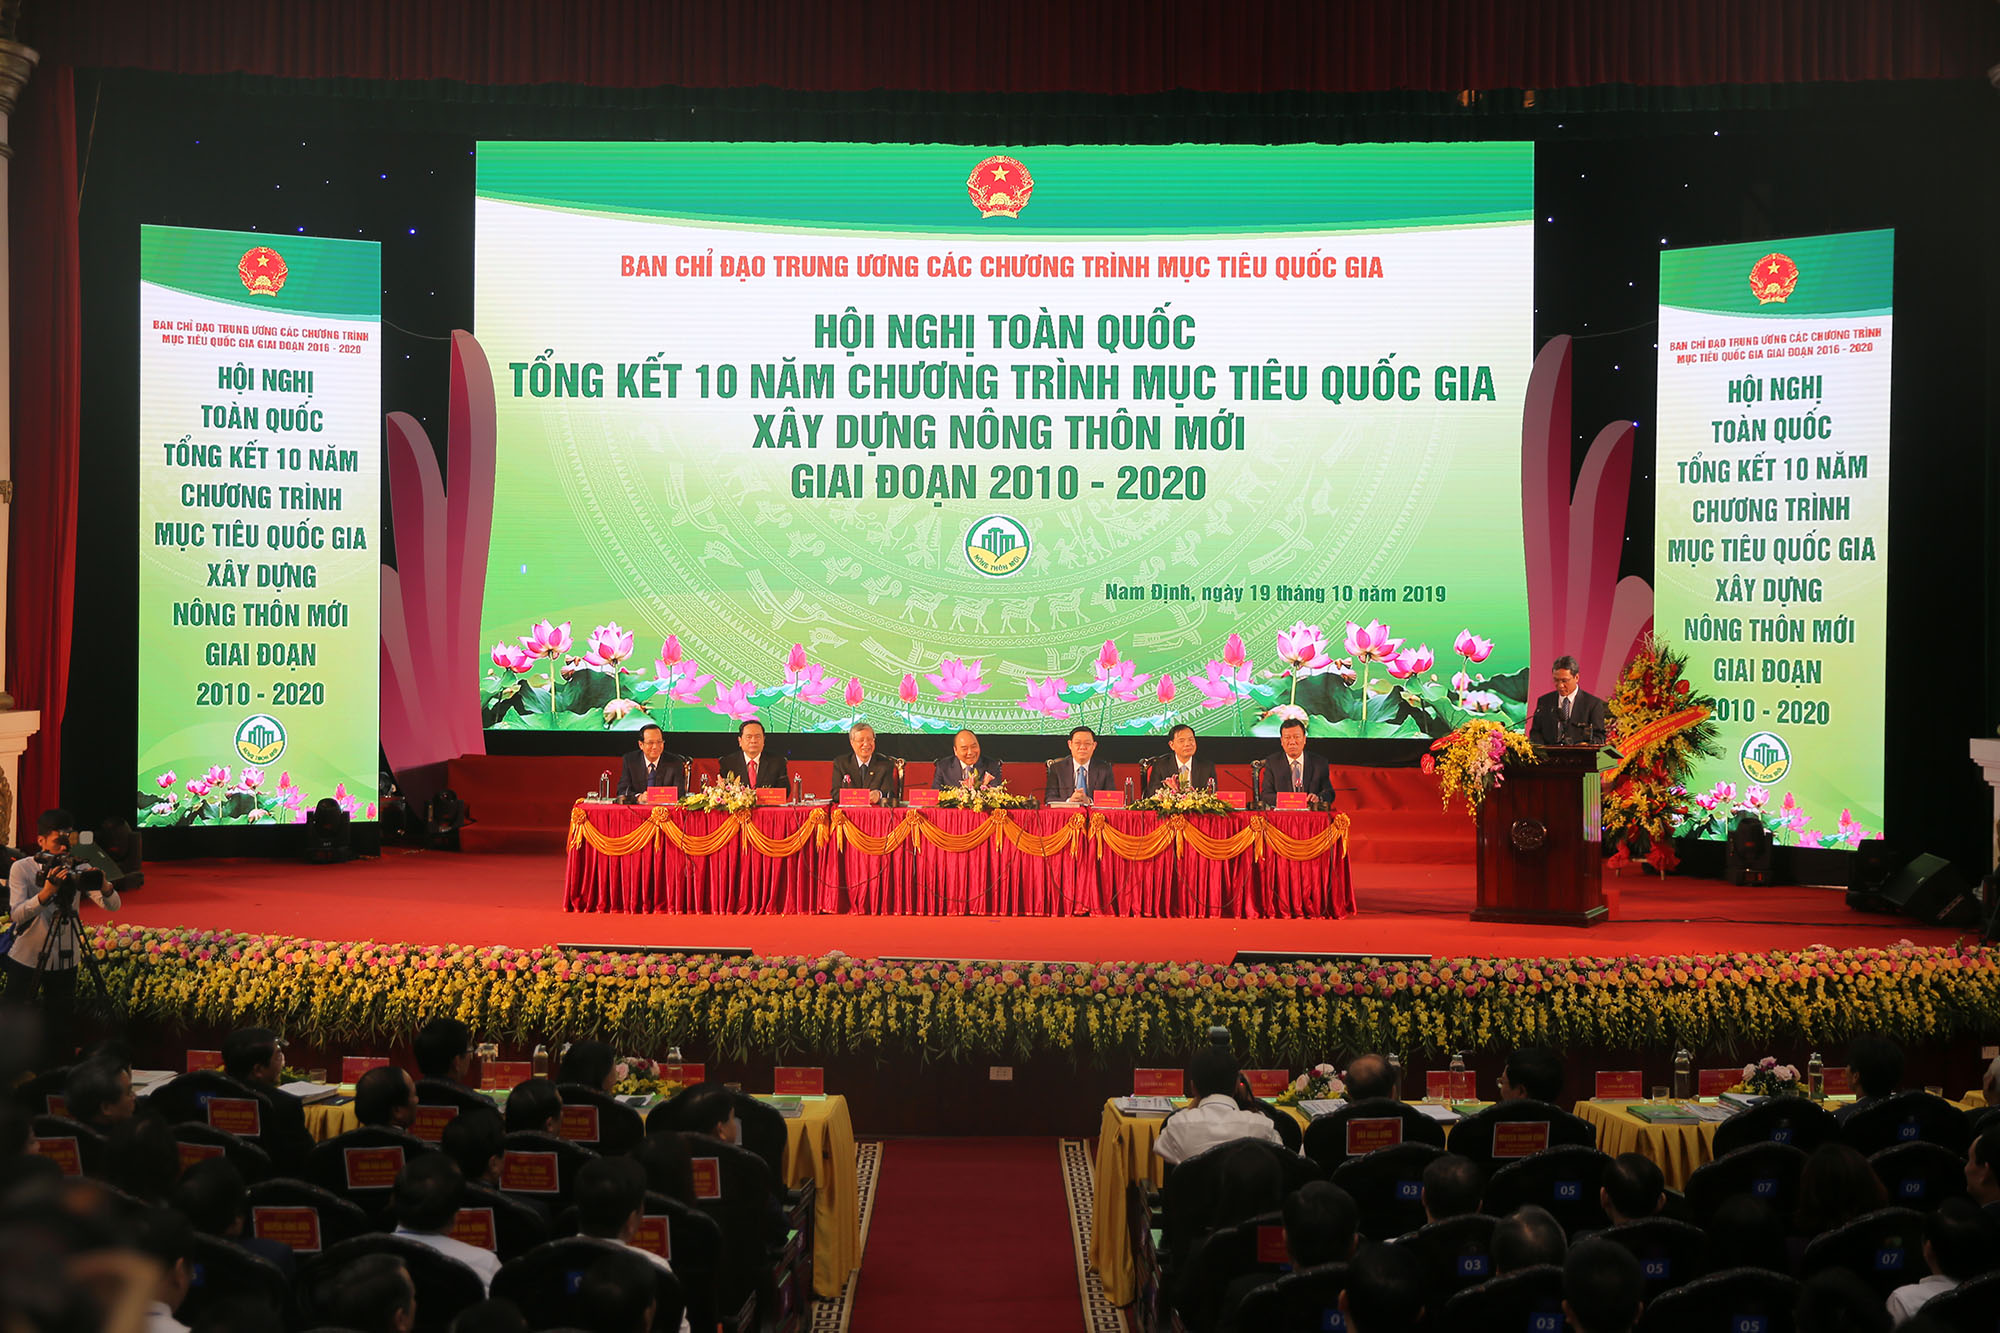 Thủ tướng Chính phủ Nguyễn Xuân Phúc cùng đại diện lãnh đạo một số ban, bộ, ngành chủ trì hội nghị.